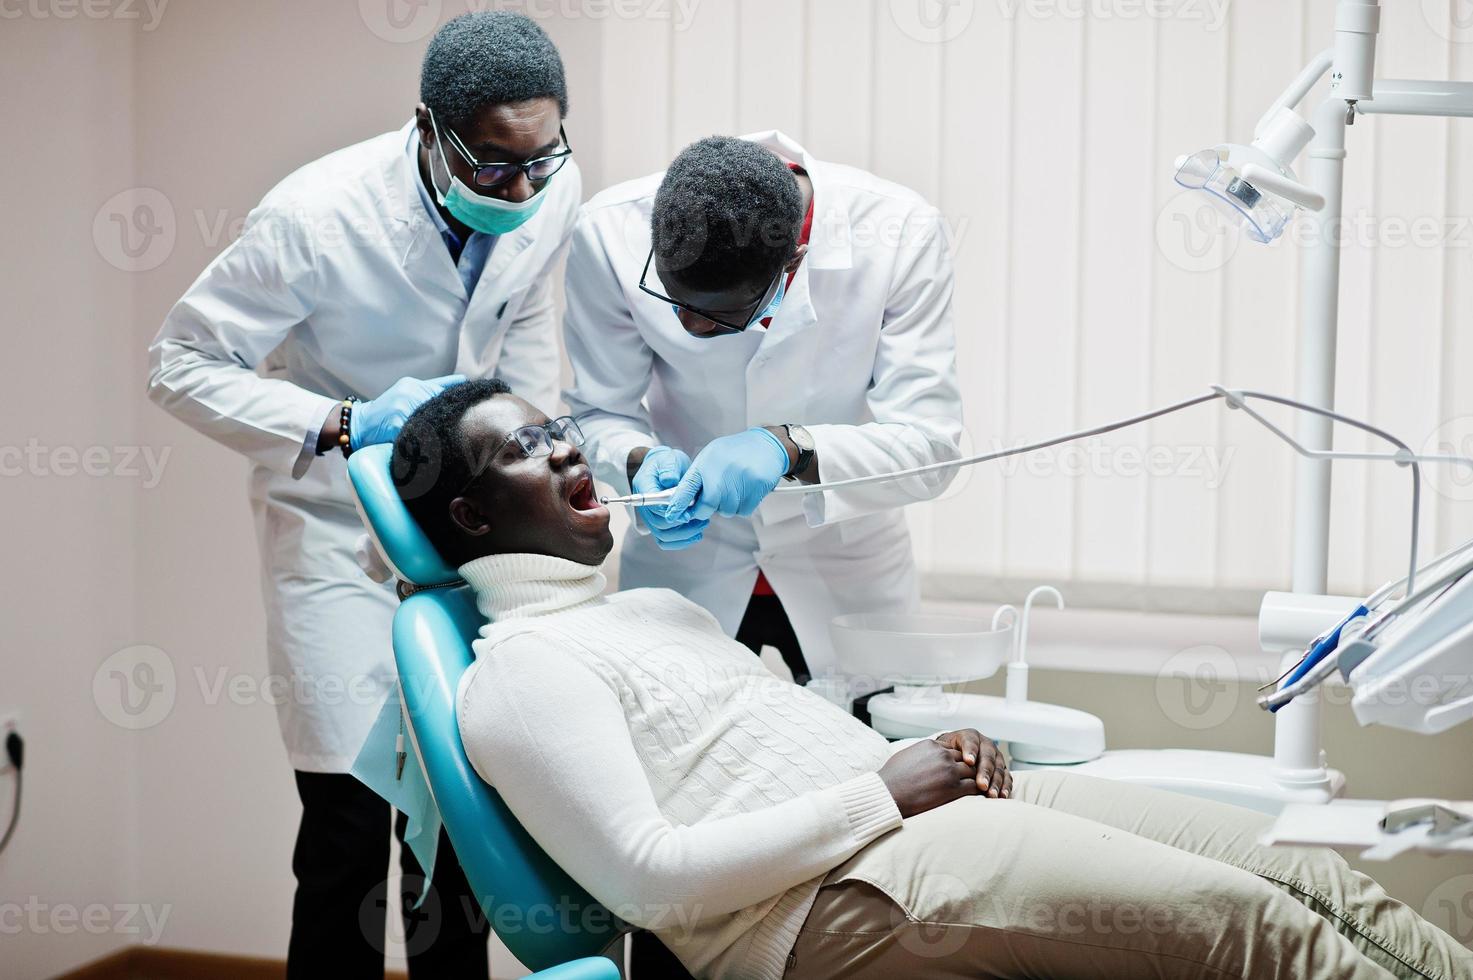 afrikanisch-amerikanischer Patient im Behandlungsstuhl. konzept für zahnarztpraxis und arztpraxis. professioneller zahnarzt, der seinem patienten bei der zahnmedizin hilft. Bohren der Zähne des Patienten in der Klinik. foto